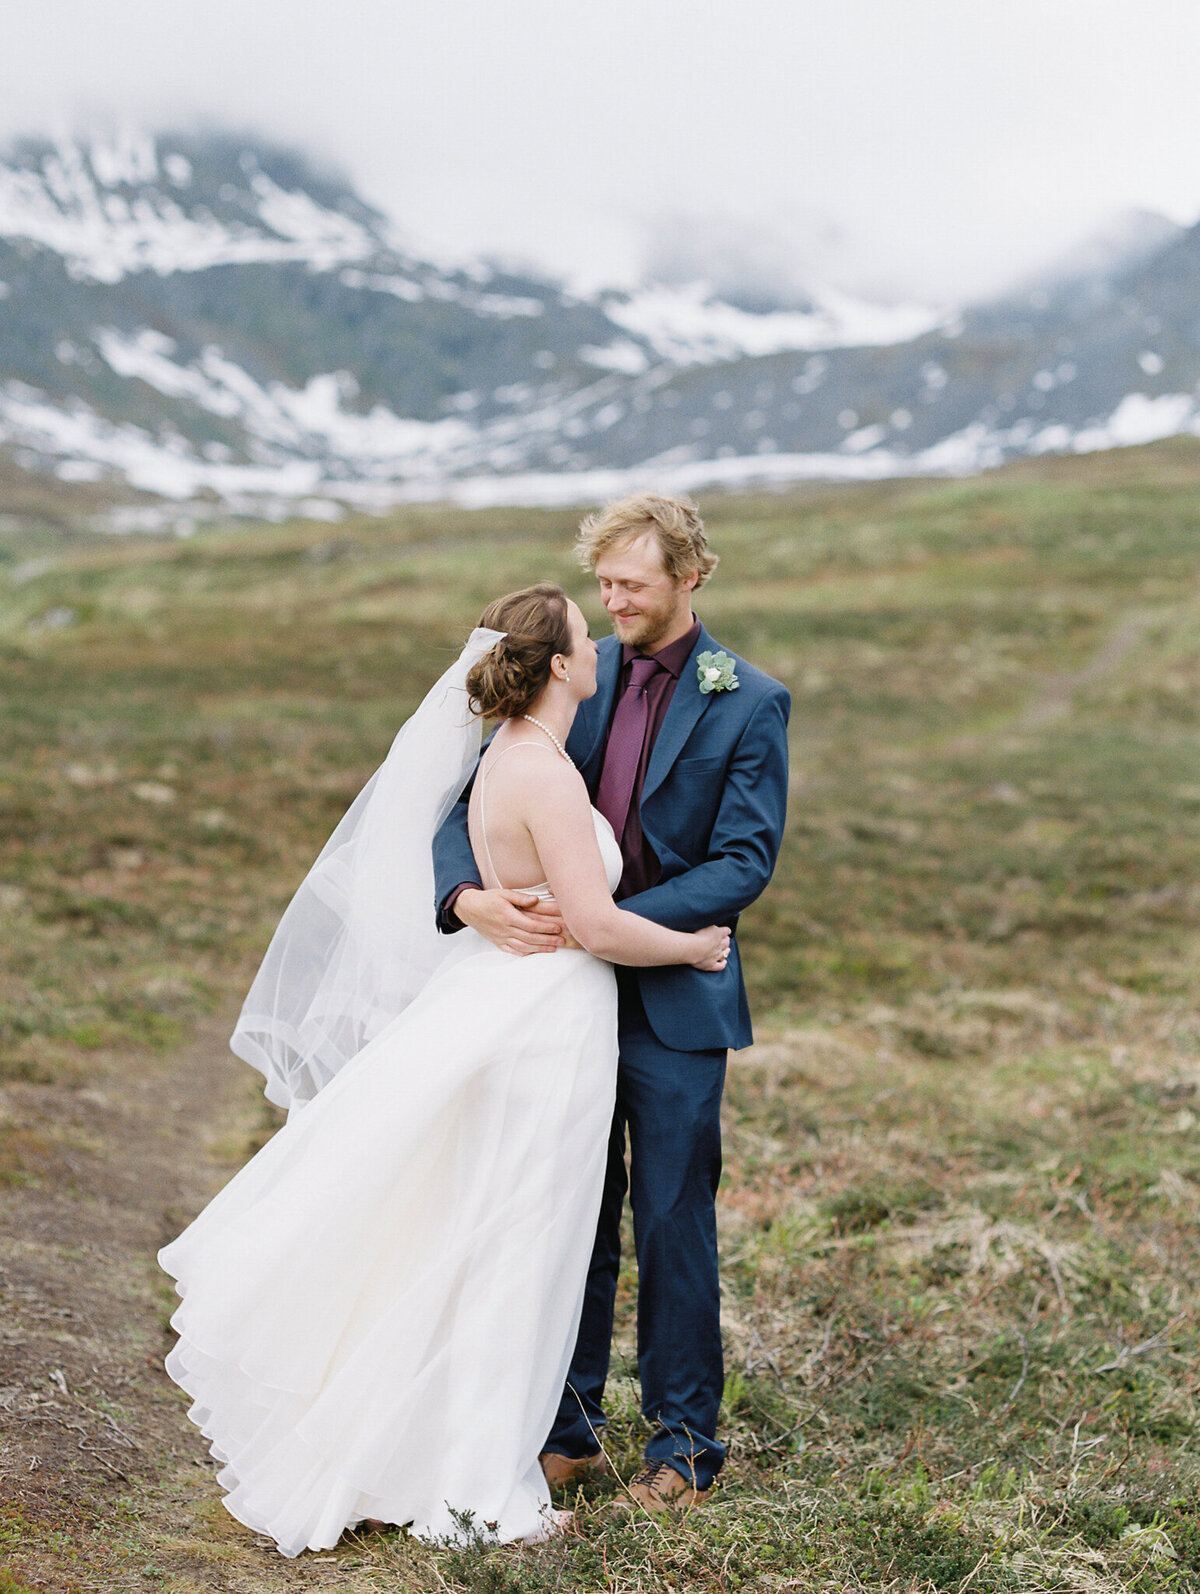 Hatcher Pass bride and groom